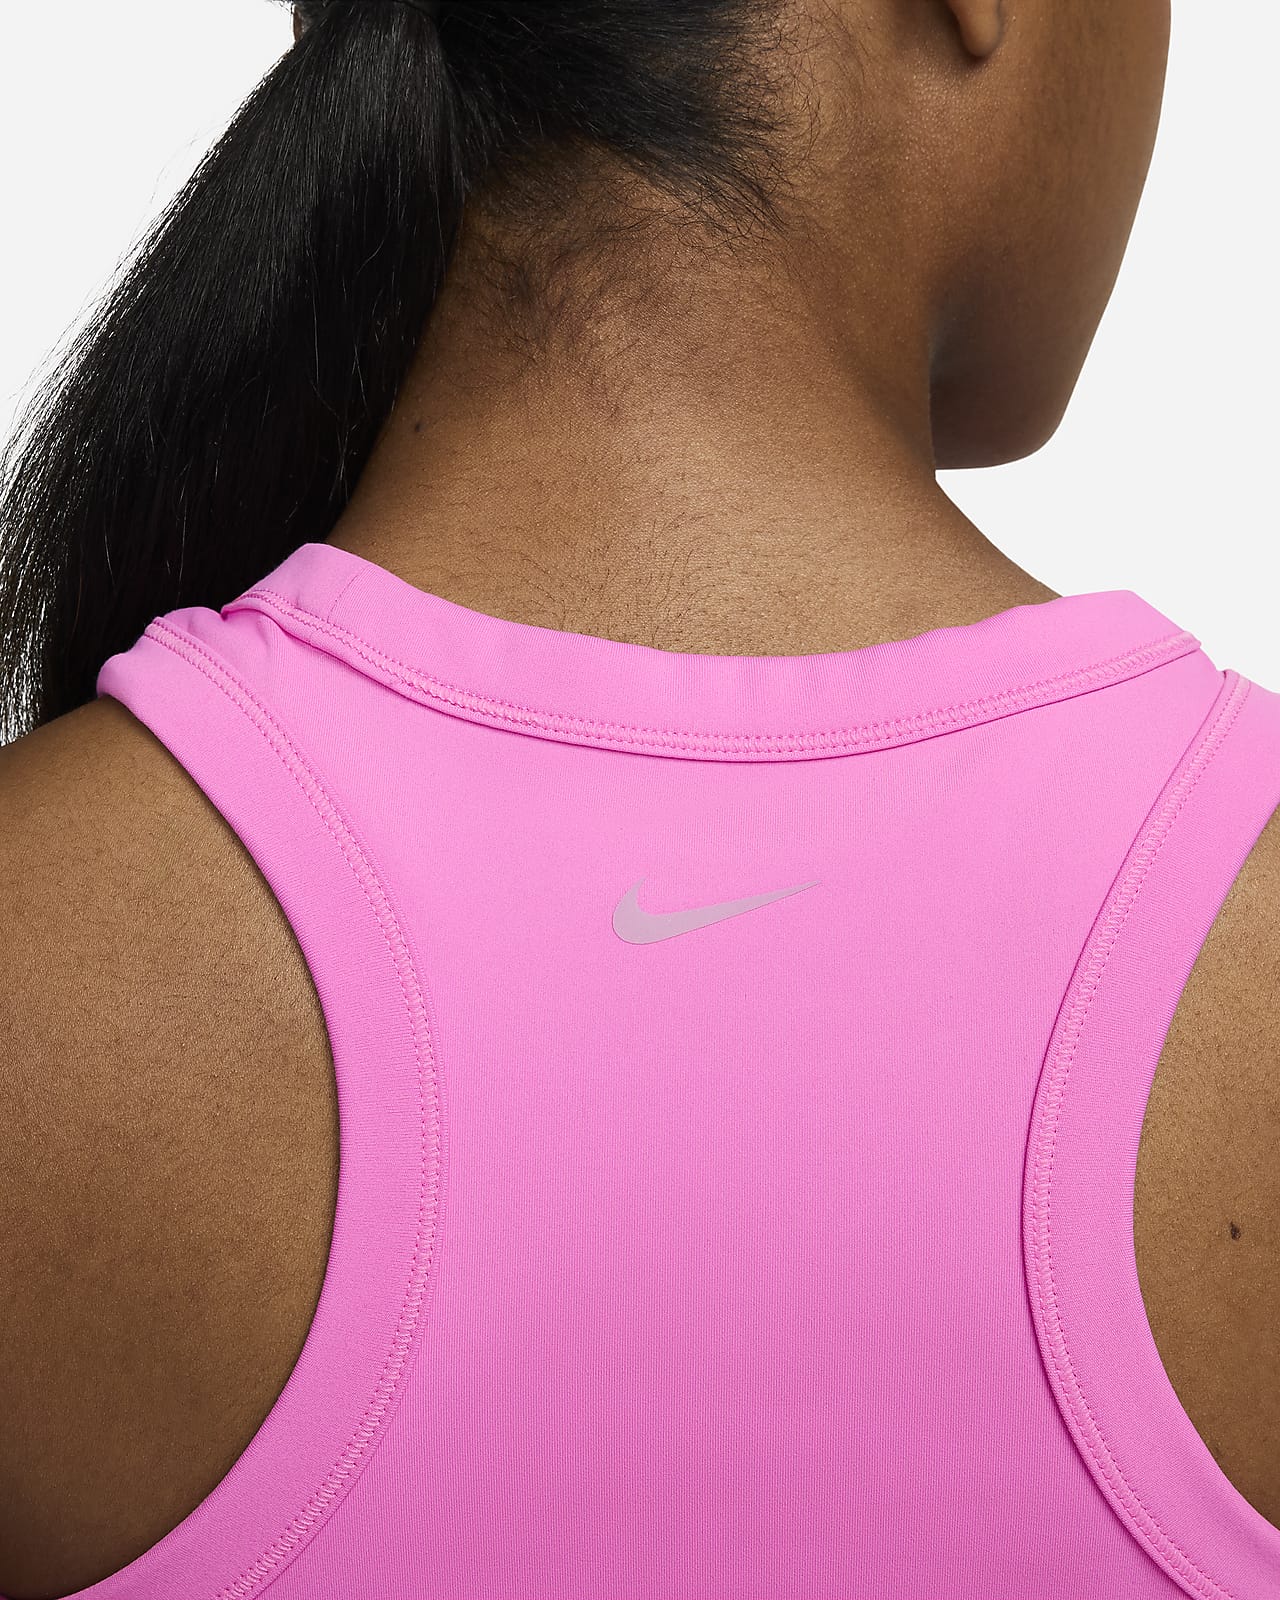 Nike Women's One Standard Tank Top, Standard Fit, Sleeveless, Dri-FIT,  Sports